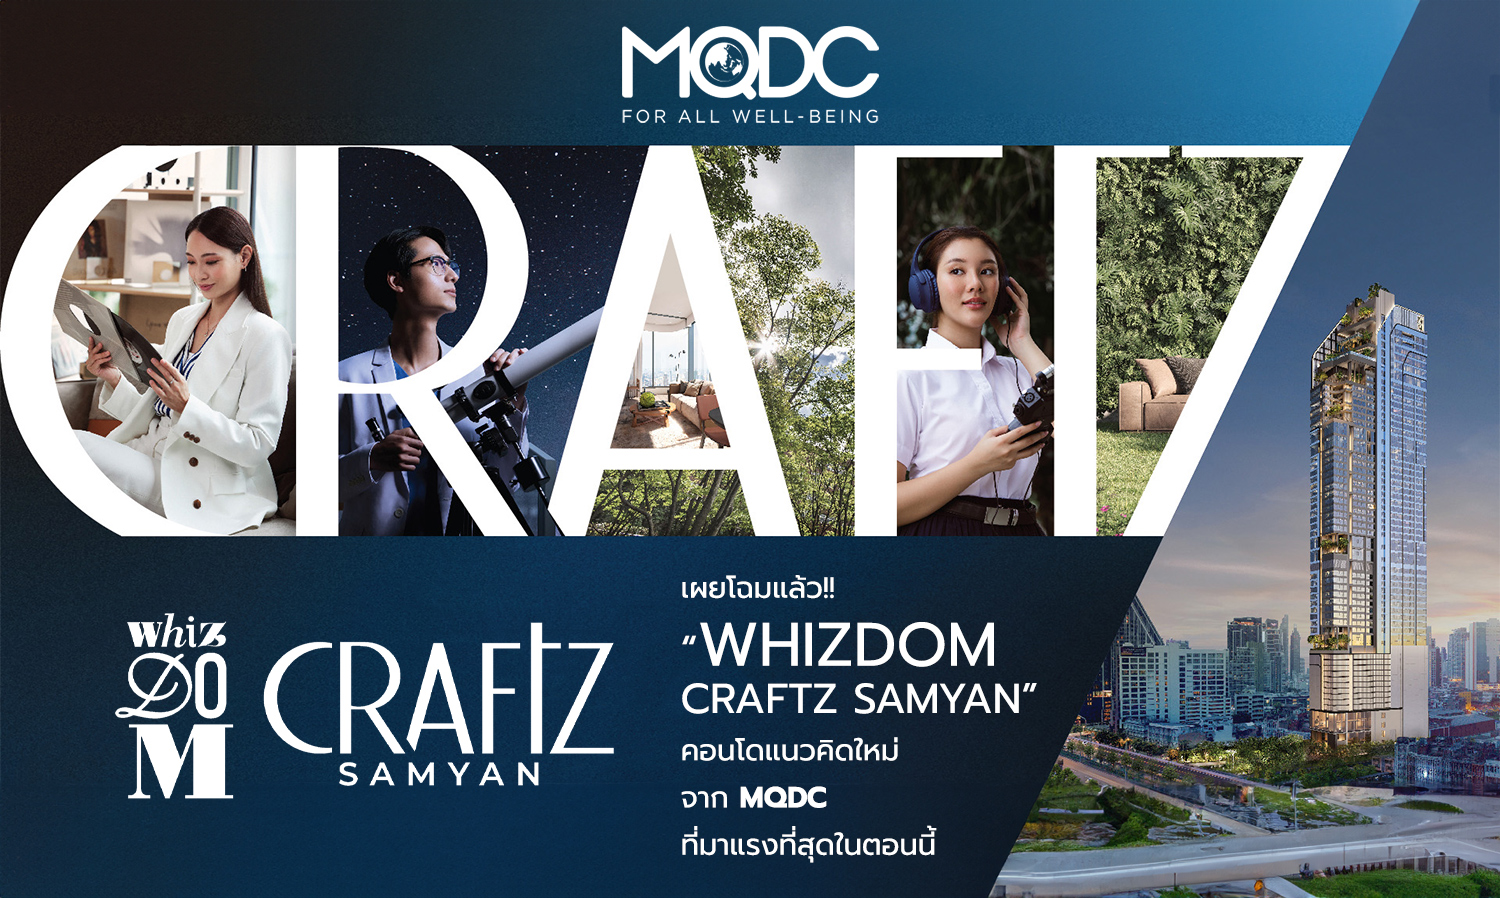 เผยโฉมแล้ว!! “Whizdom Craftz Samyan” คอนโดแนวคิดใหม่จาก MQDC ที่มาแรงที่สุดในตอนนี้